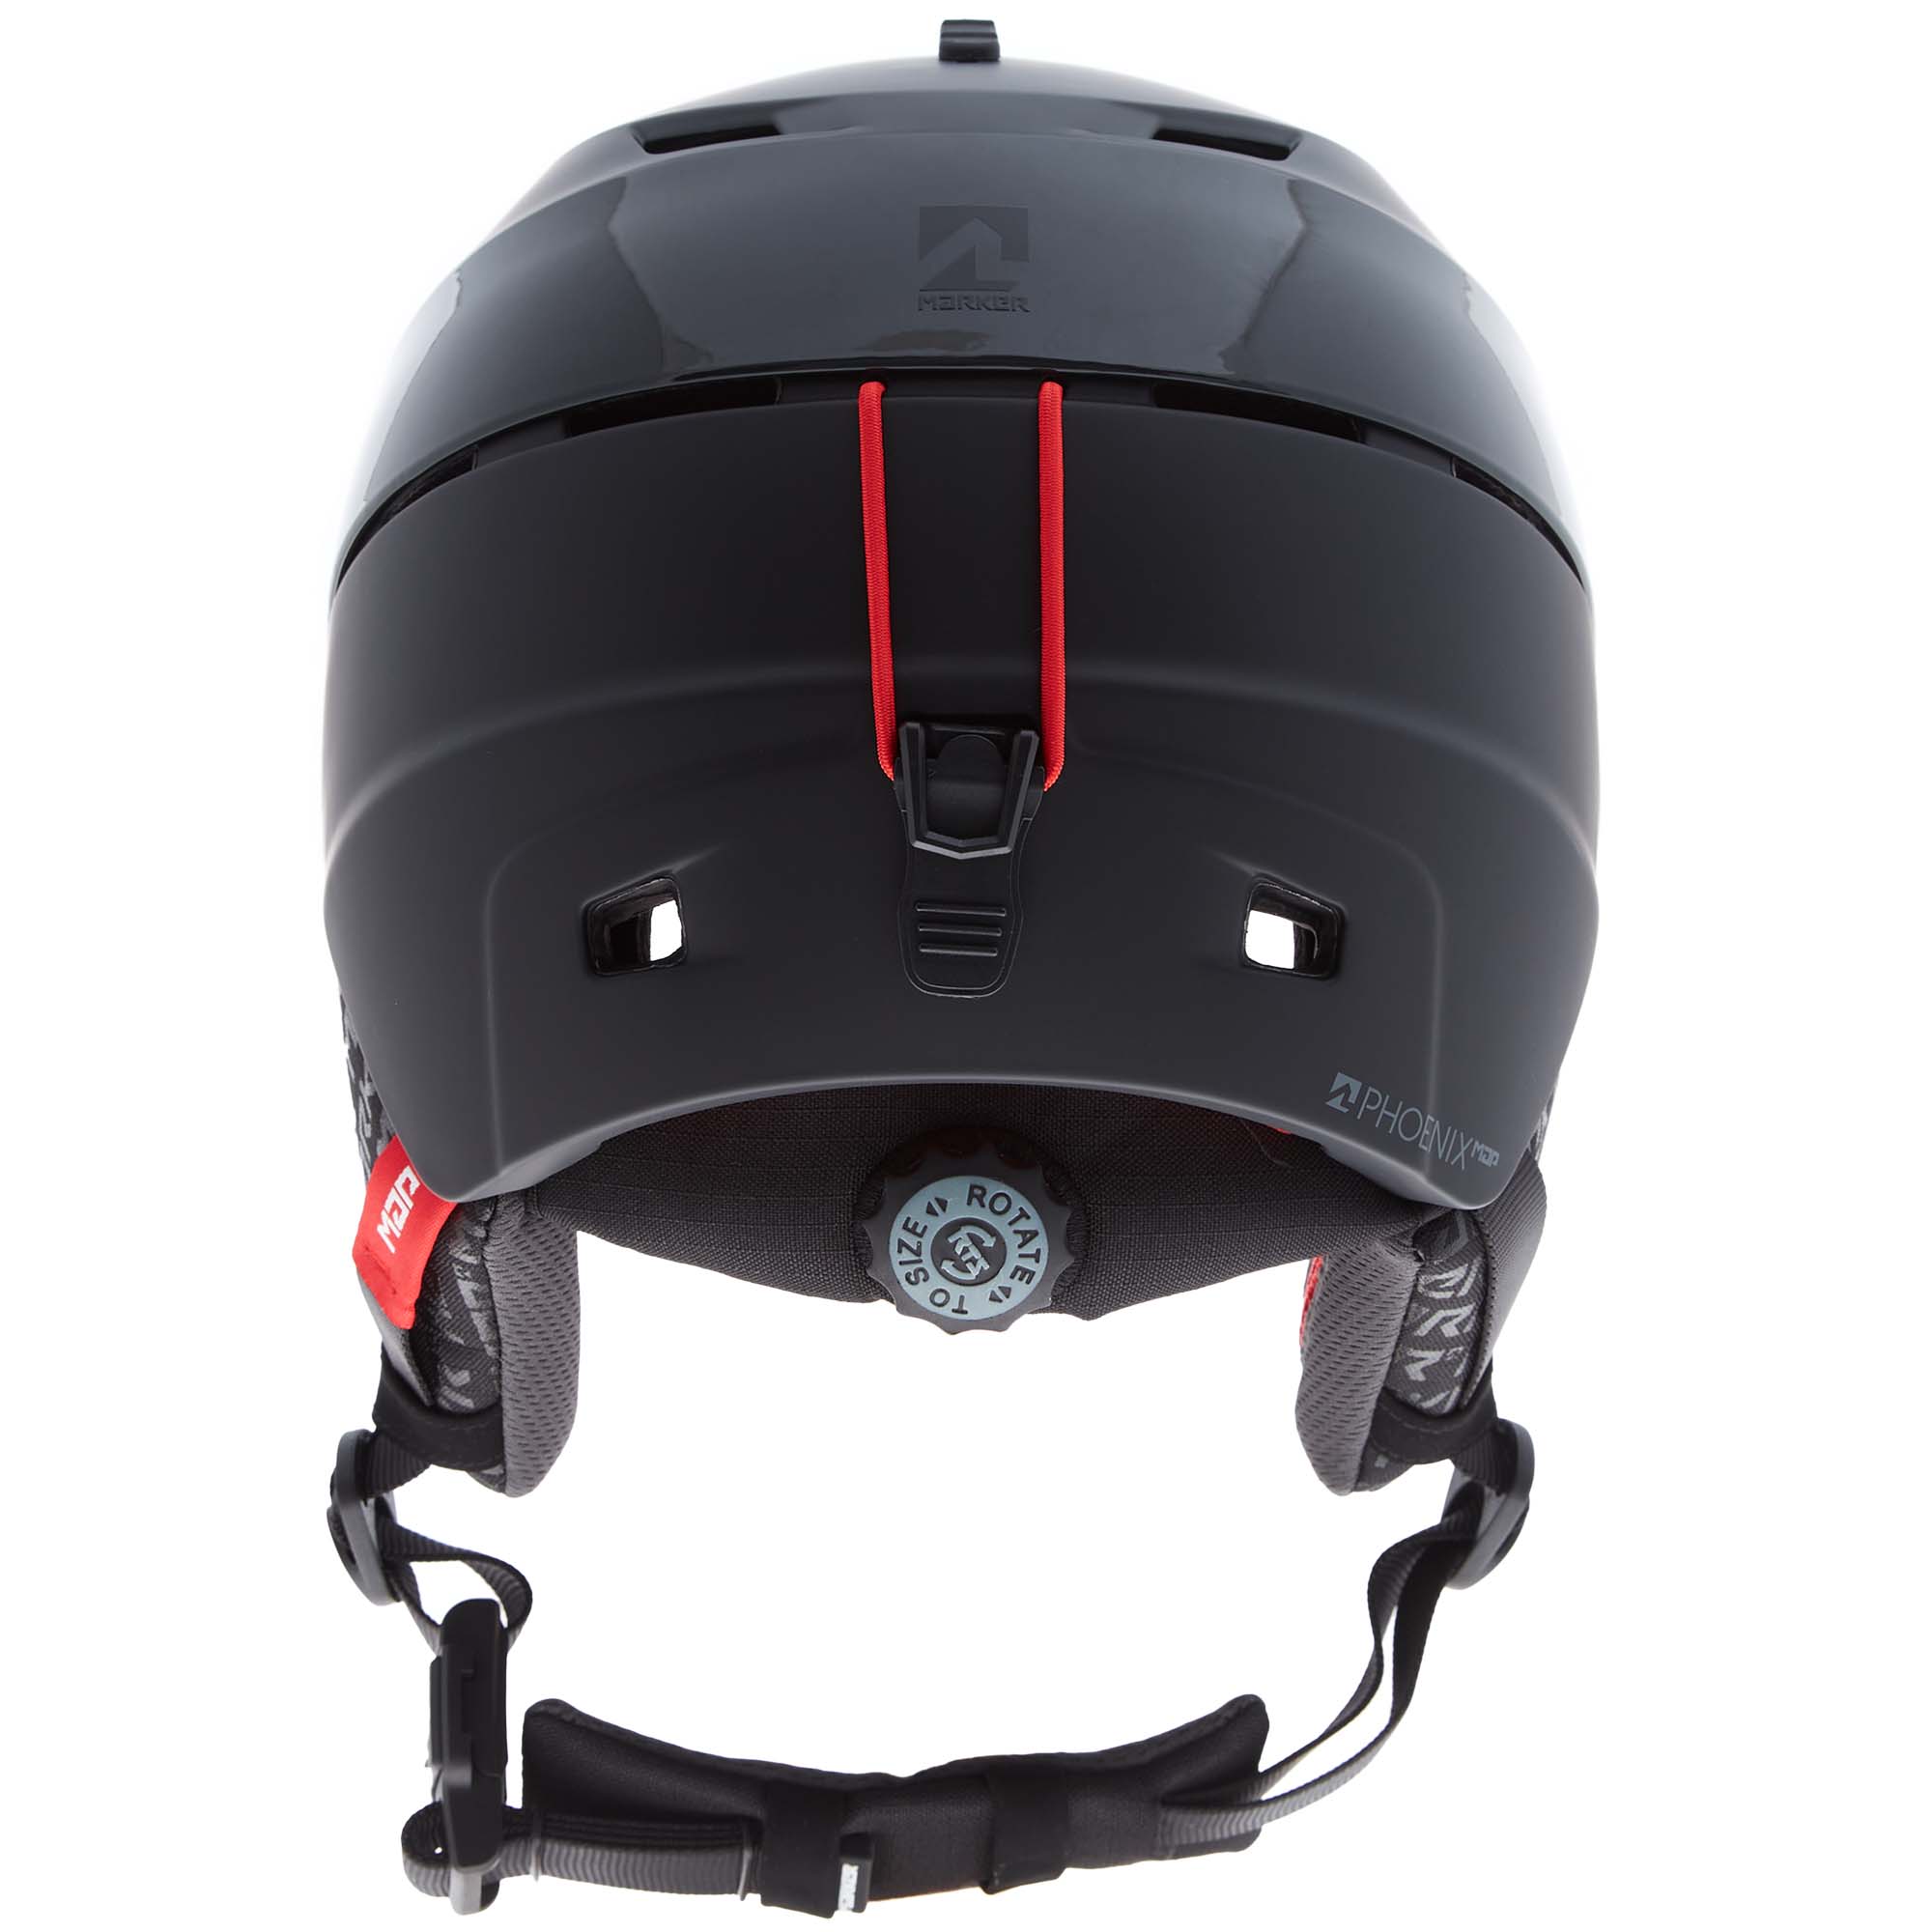 Marker Phoenix Ski/Snowboard Helmet